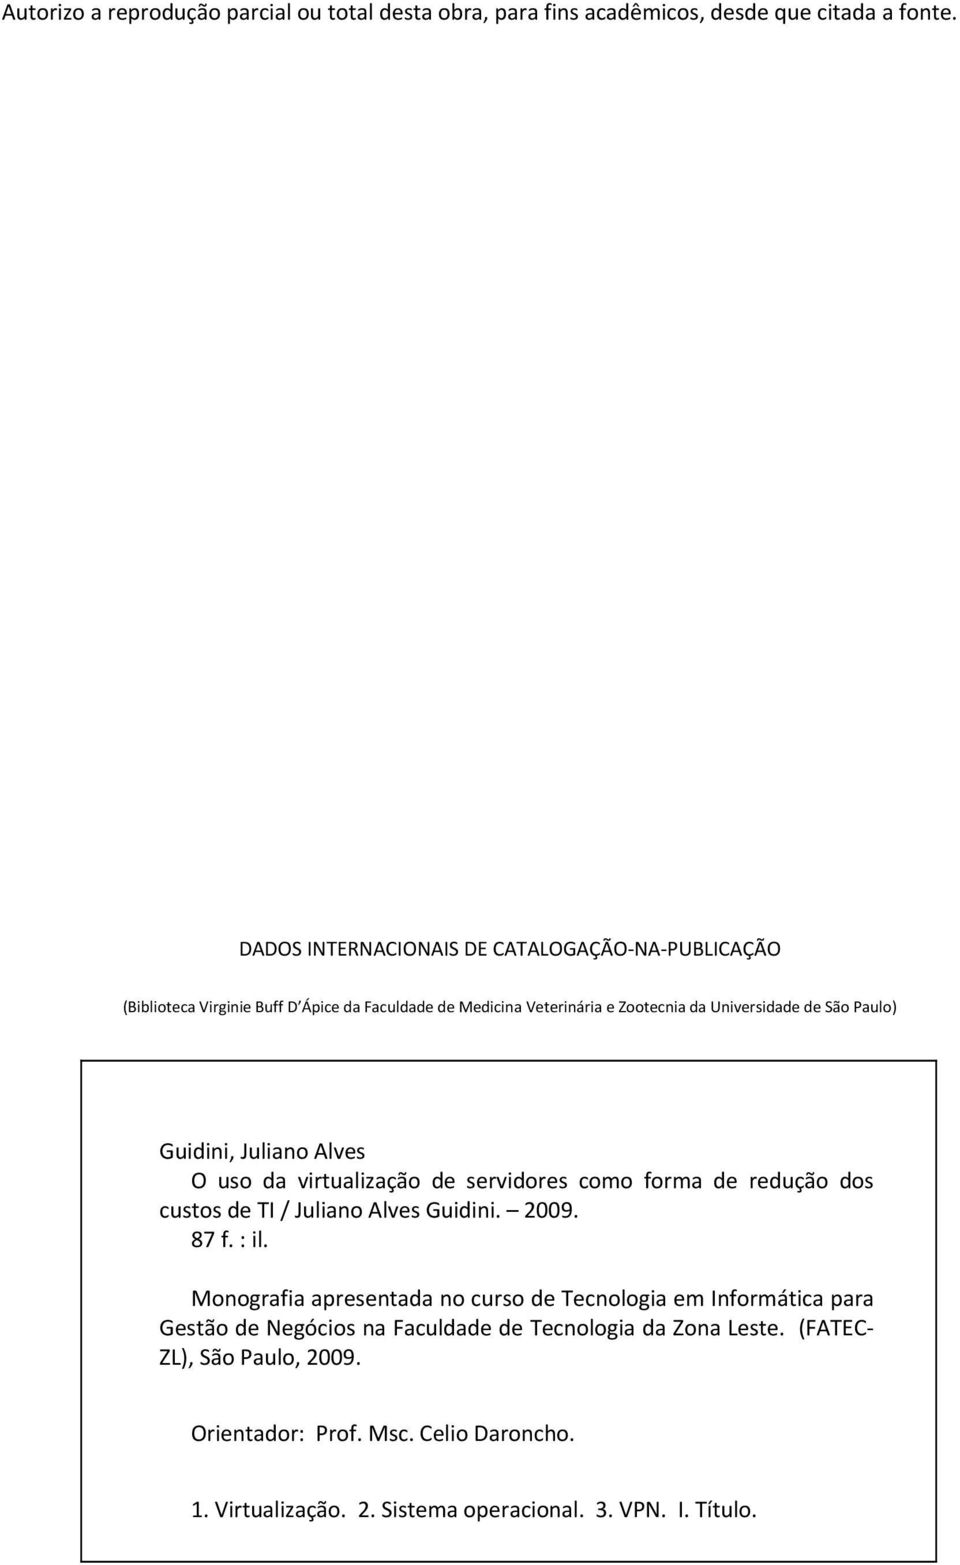 Guidini, Juliano Alves O uso da virtualização de servidores como forma de redução dos custos de TI / Juliano Alves Guidini. 2009. 87 f. : il.